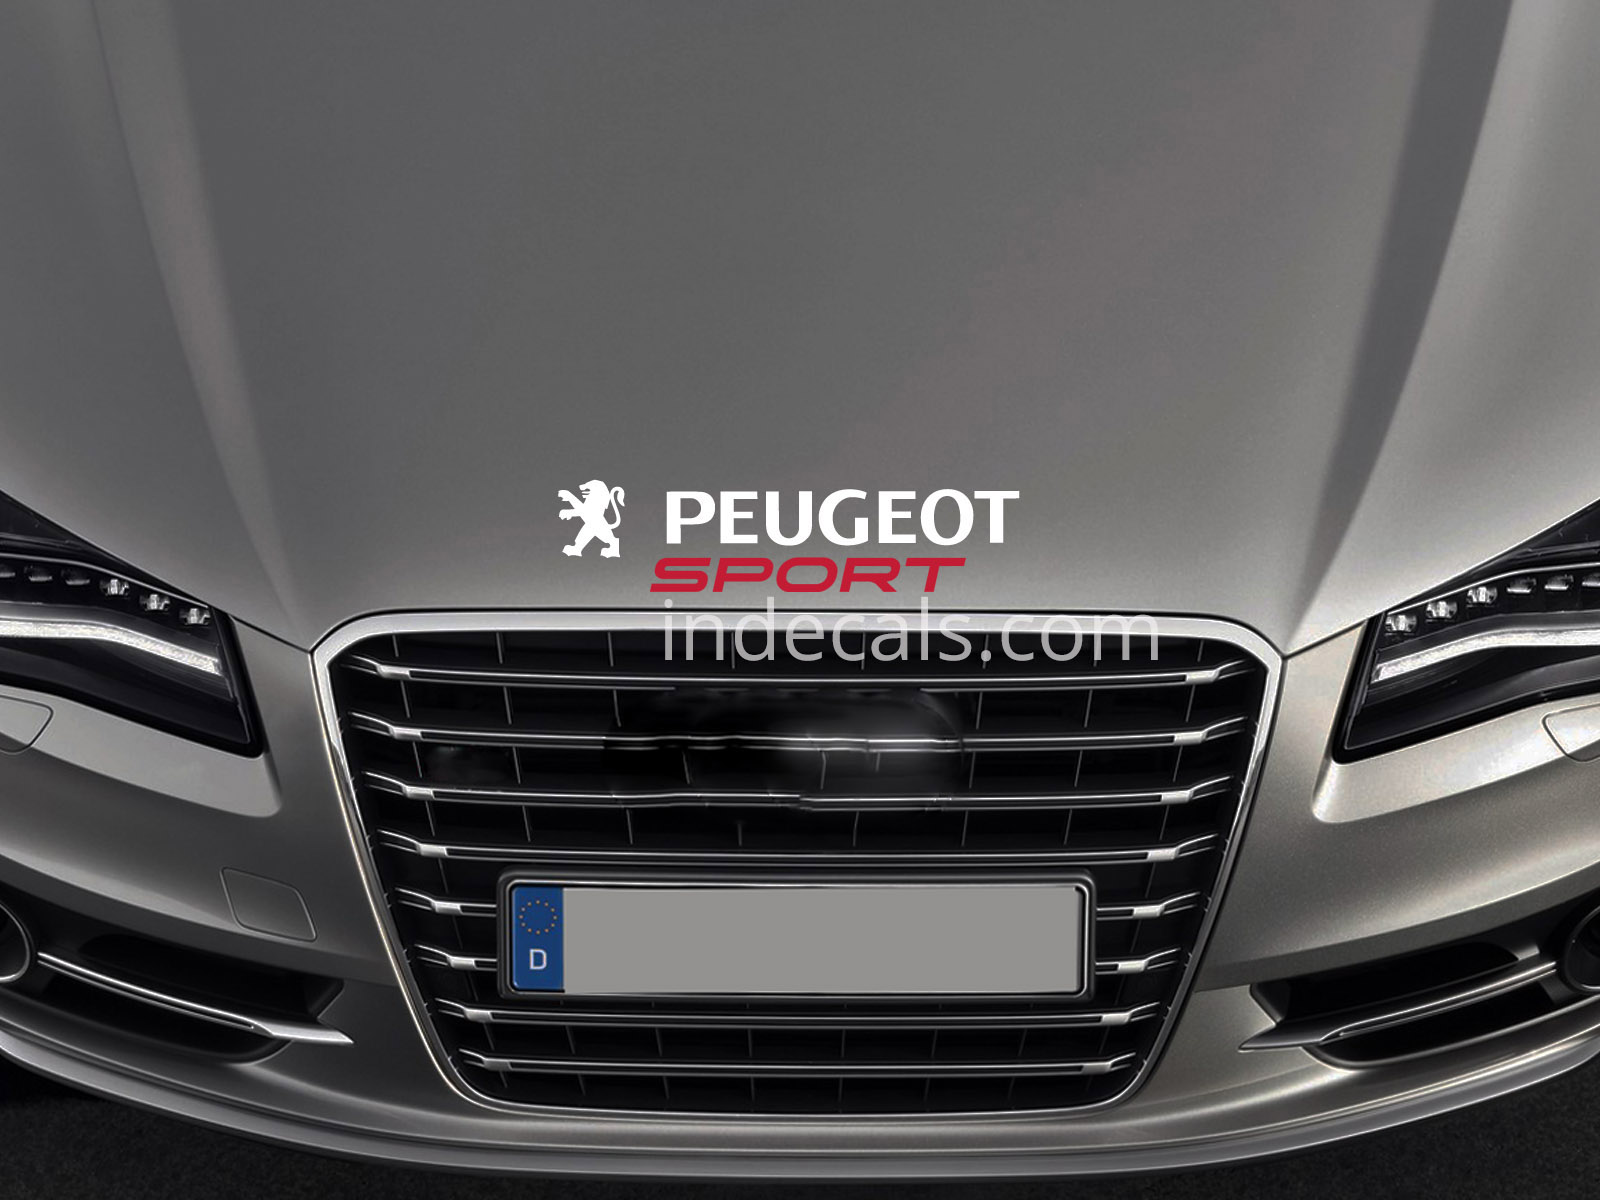 1 x Peugeot Sport Sticker for Bonnet - White & Red